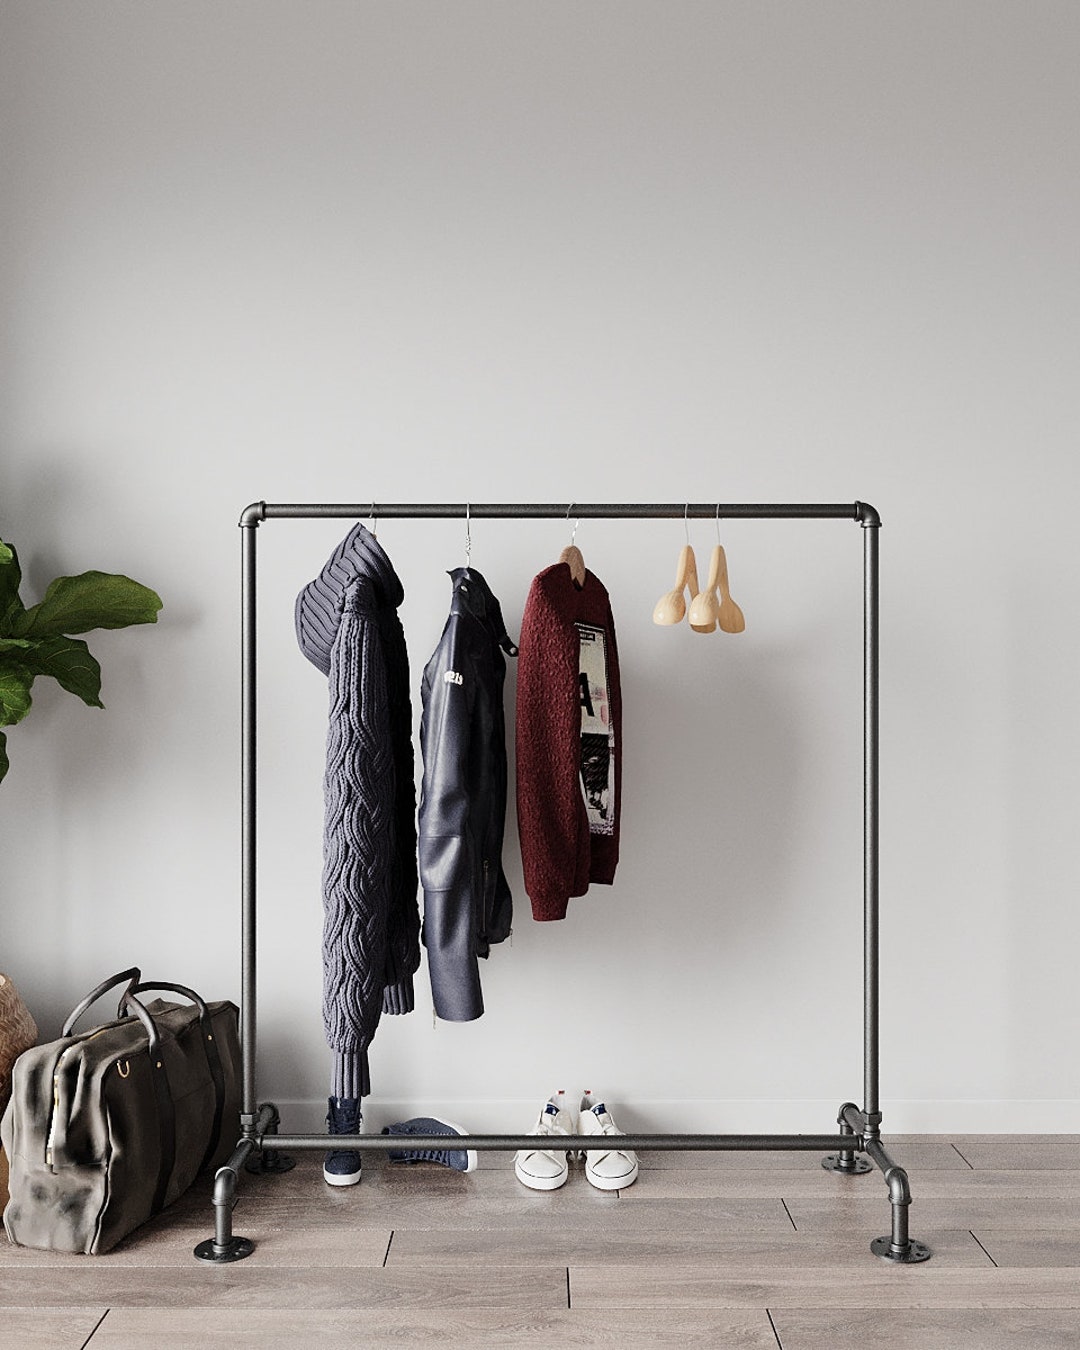 Bedroom Clothes Rack Detachable Accessories Living Room Cloth